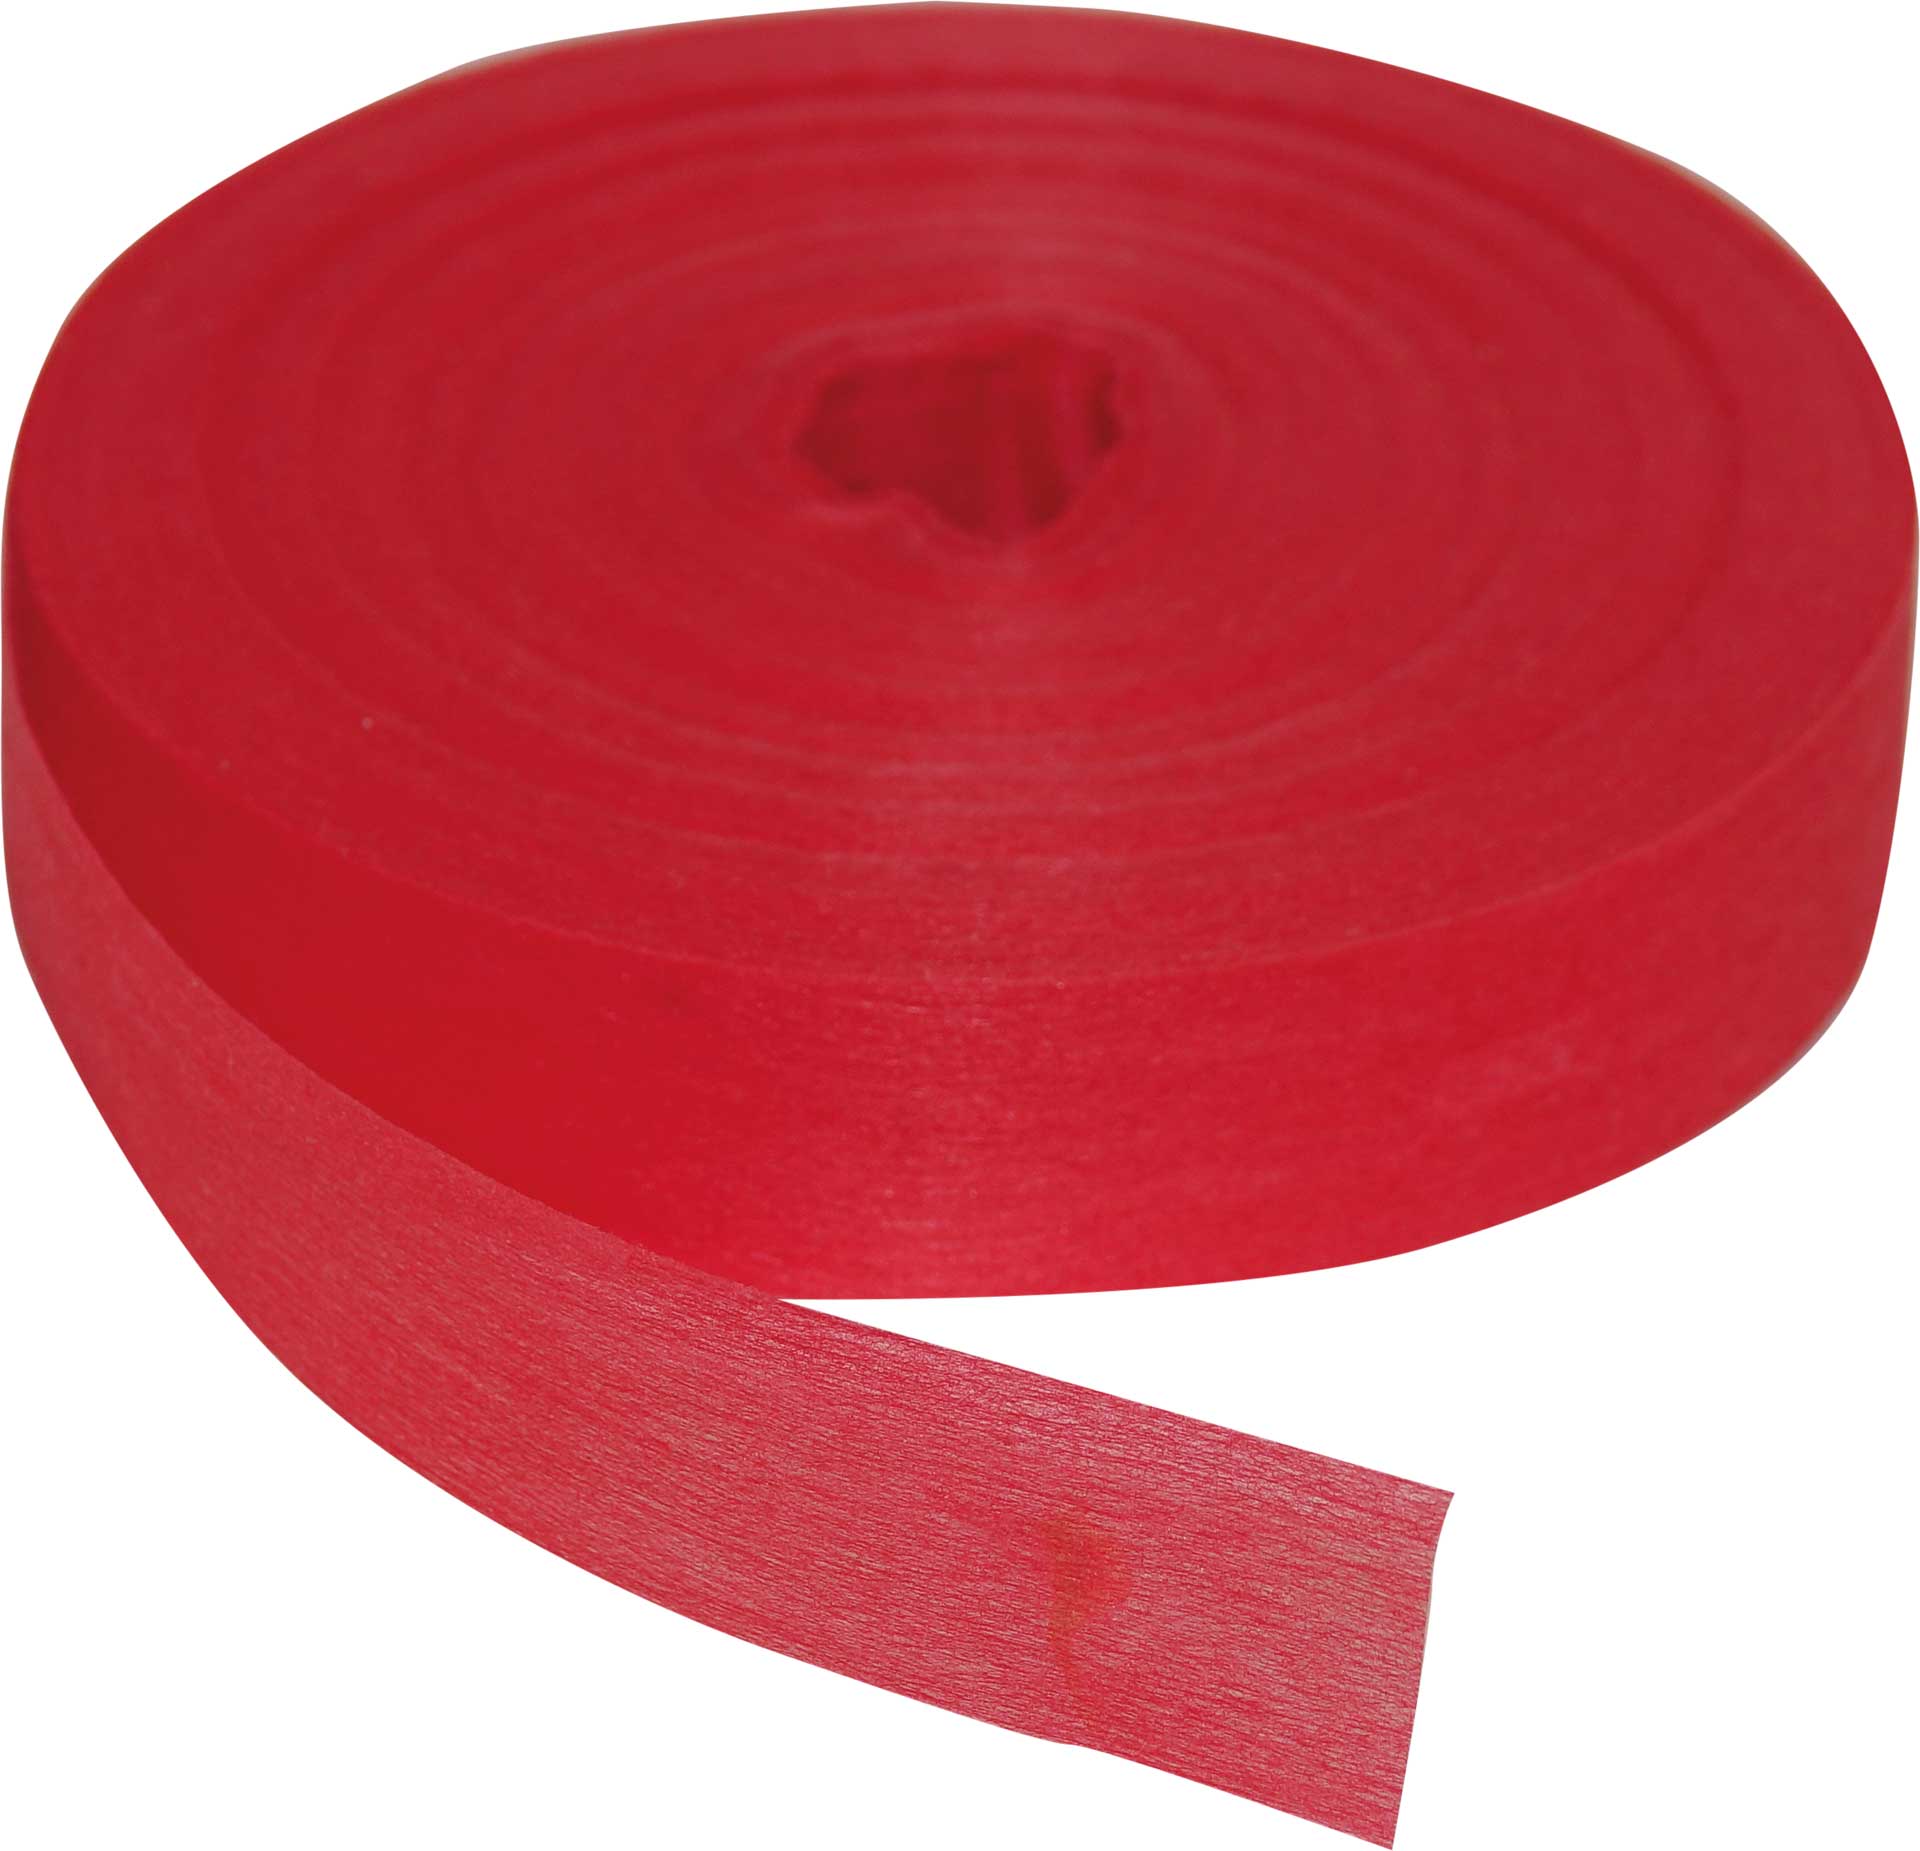 Robbe Modellsport Farbbänder für Wingo 2 in den Farben rot ca. 75m